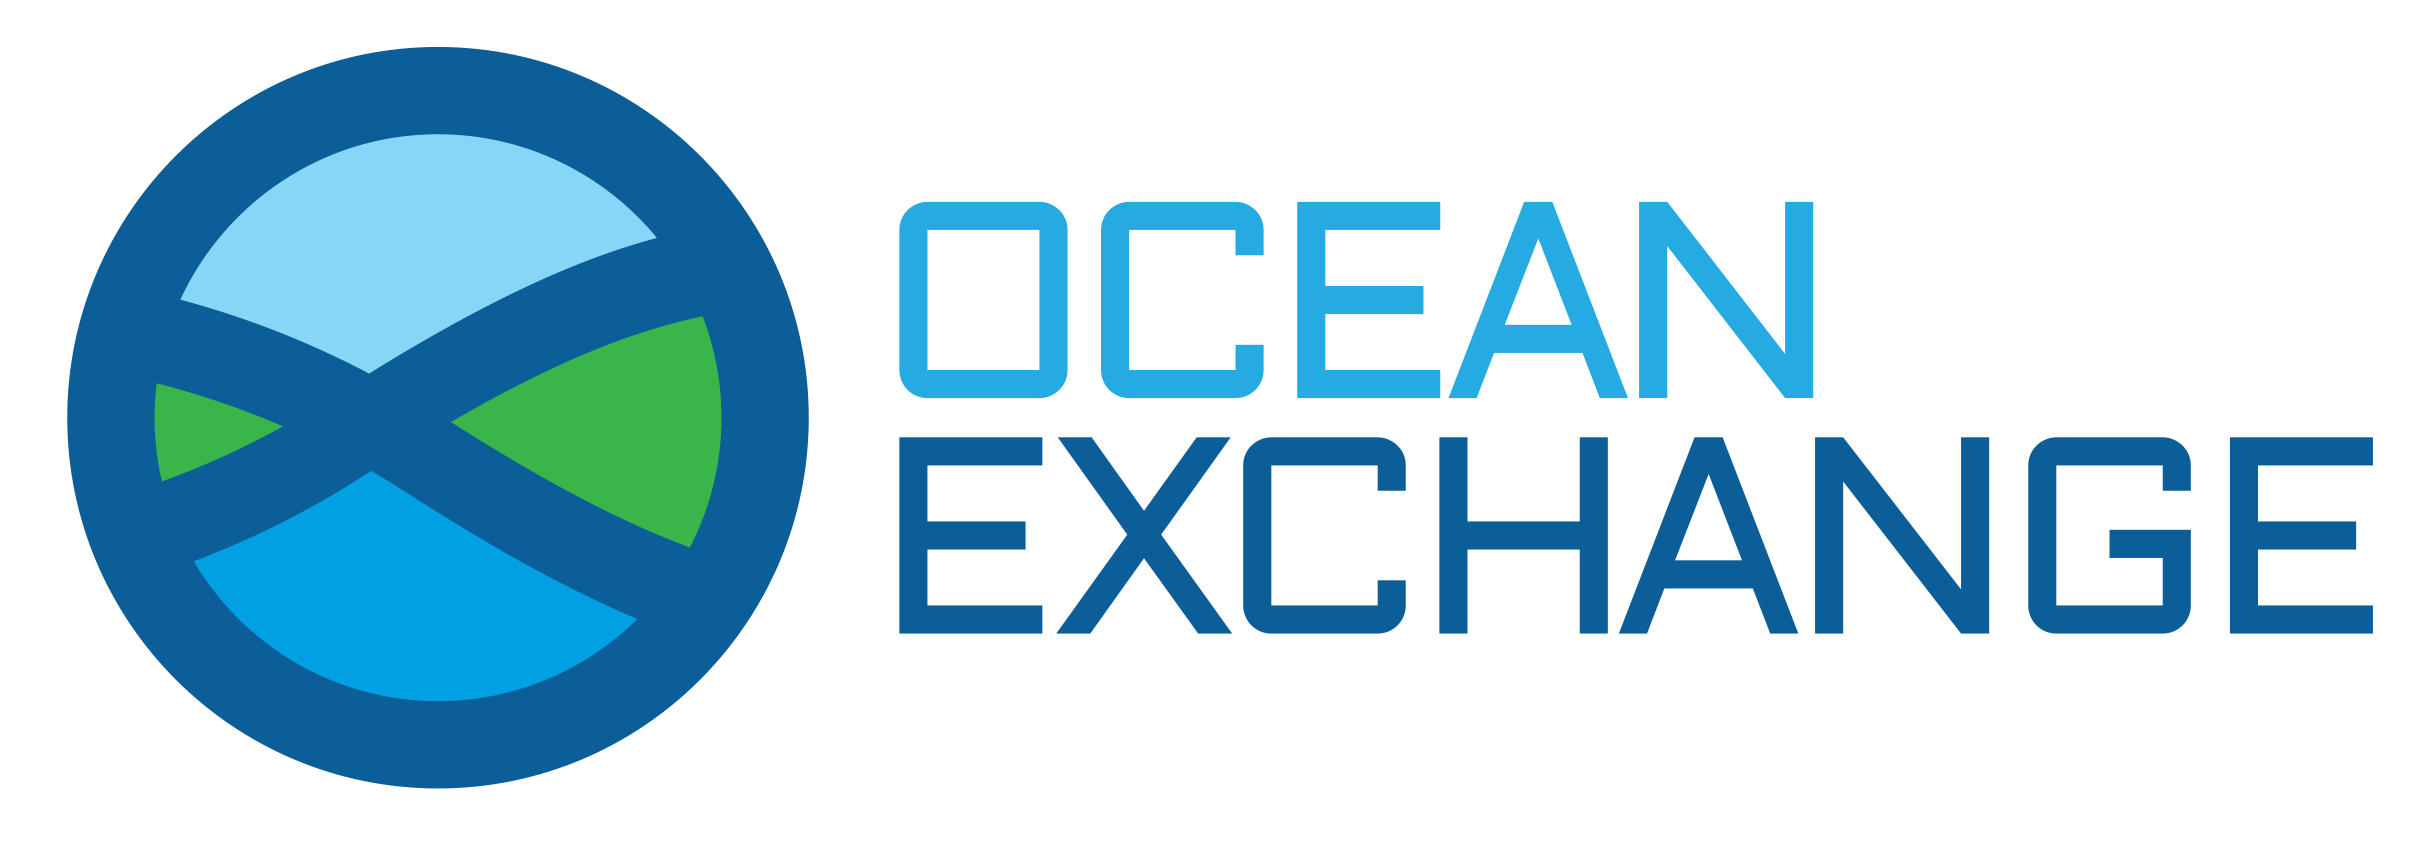 Ocean Exchange